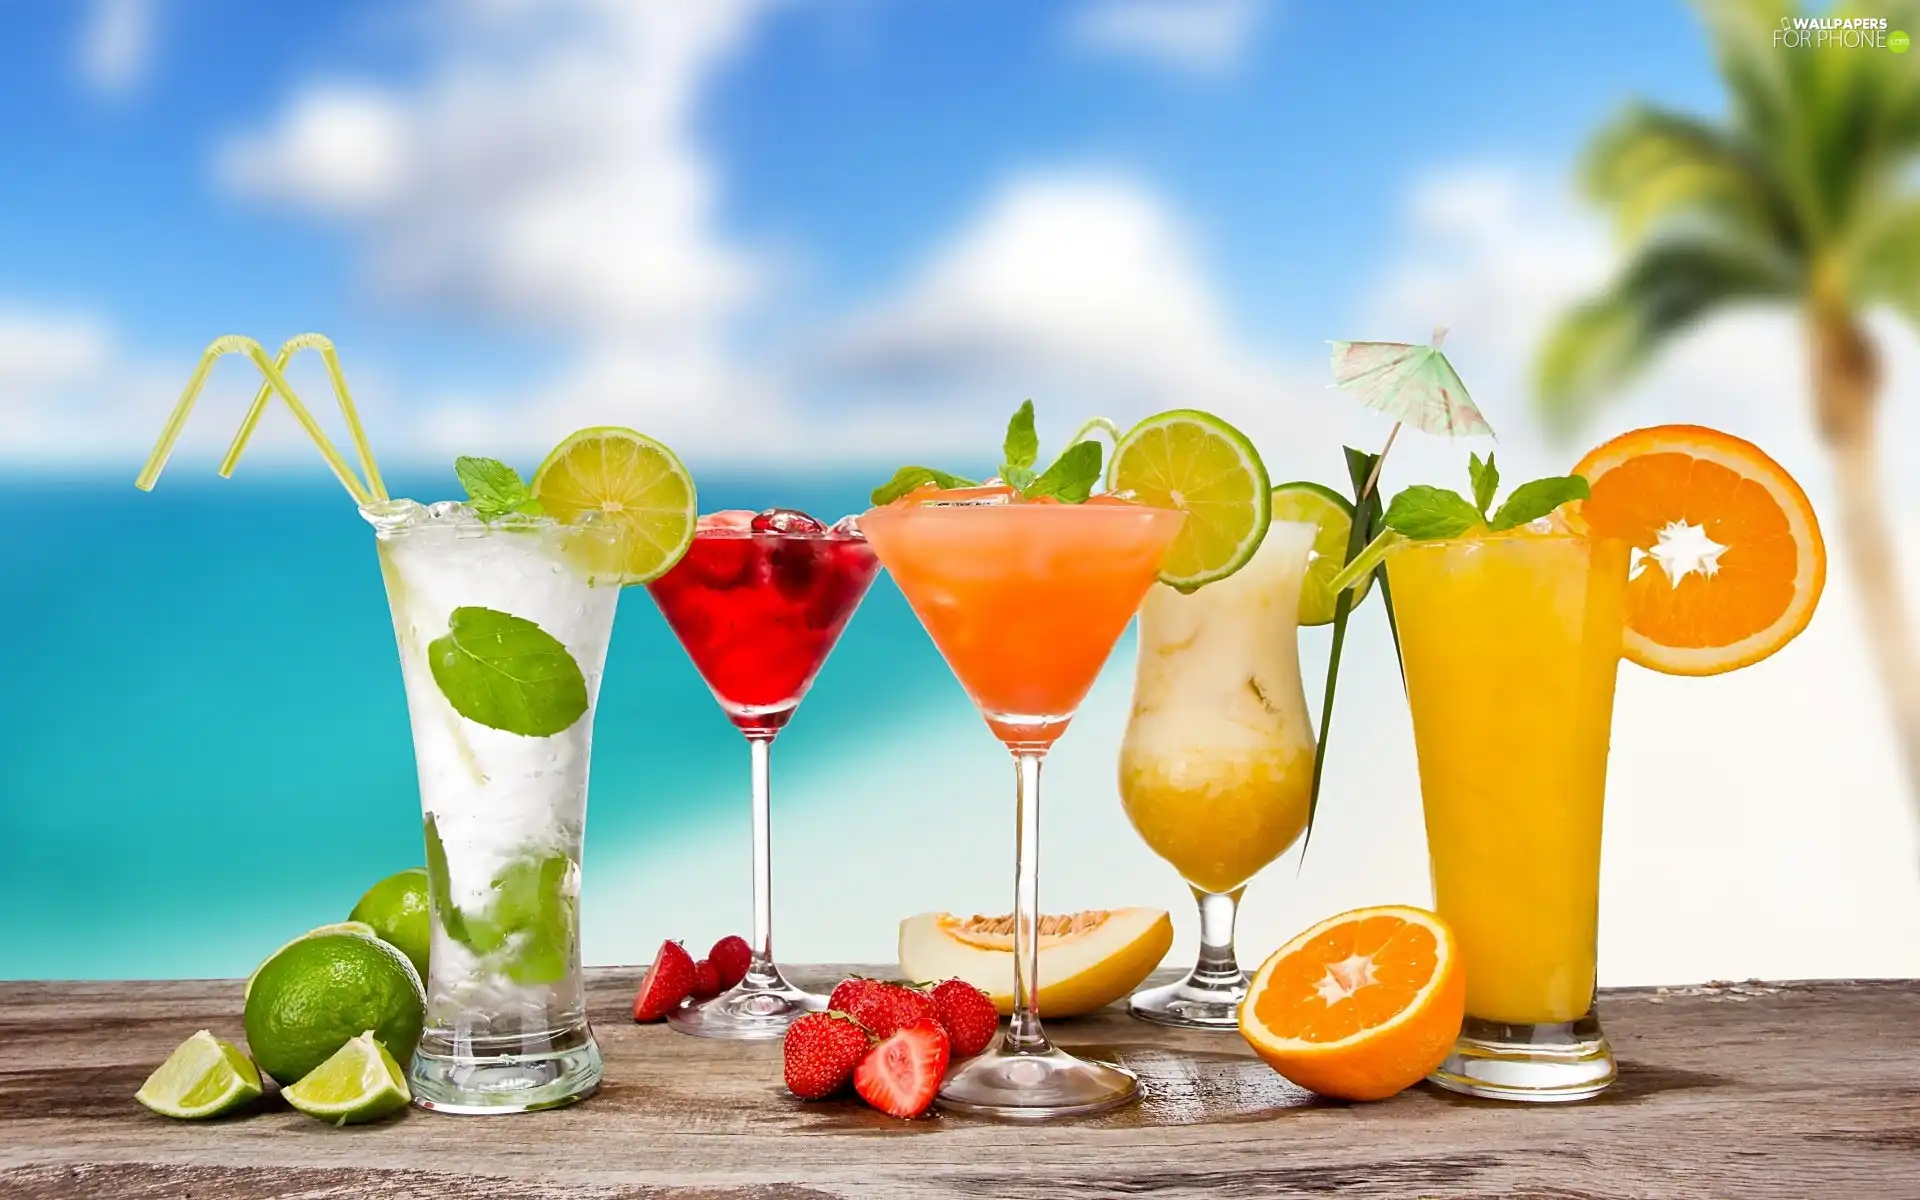 citrus, color, drinks